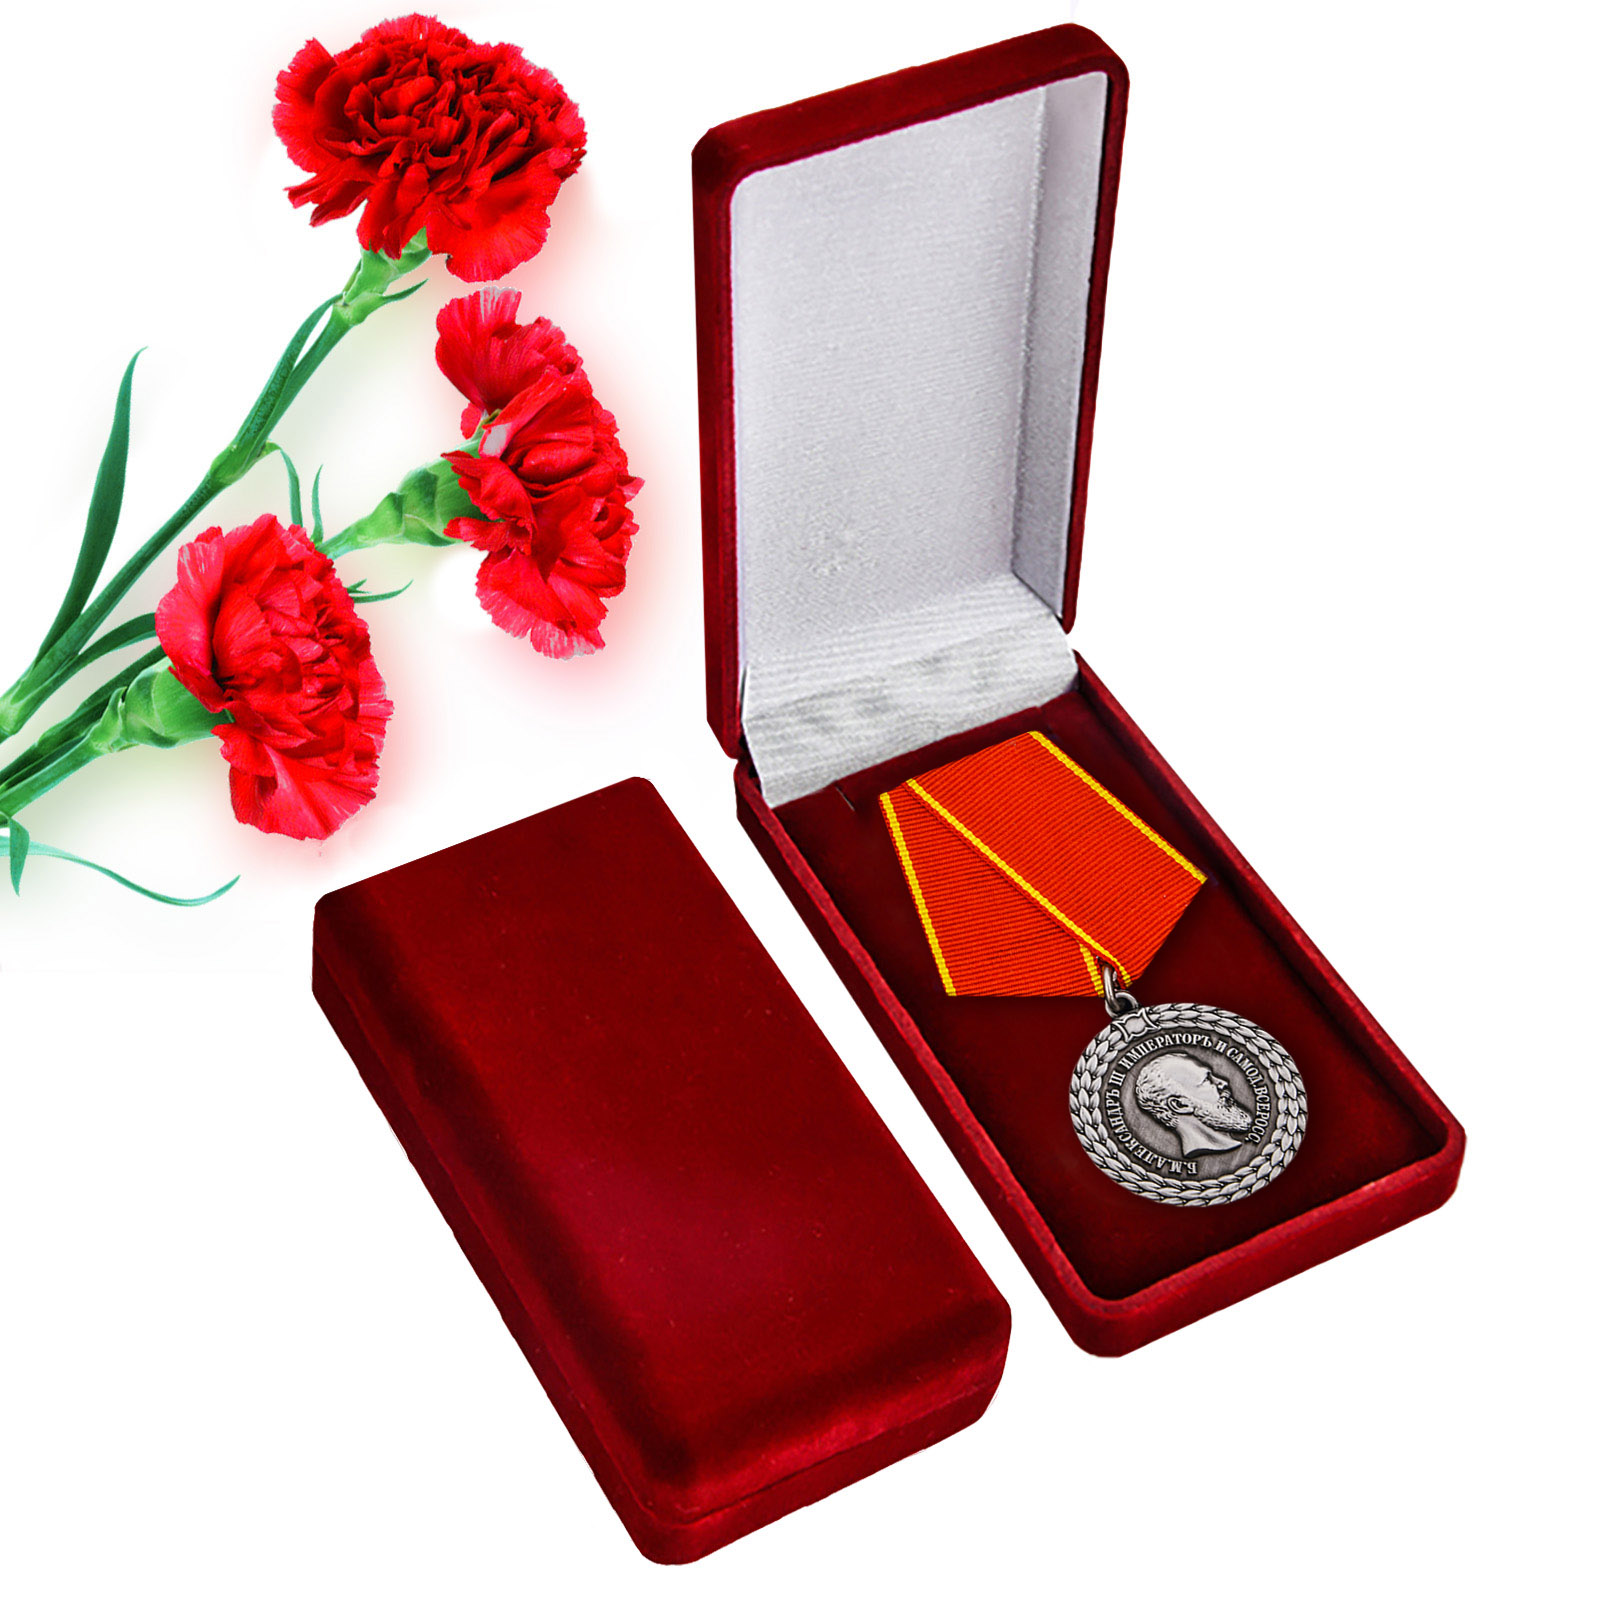 Купить медаль Александра III За беспорочную службу в полиции оптом или в розницу